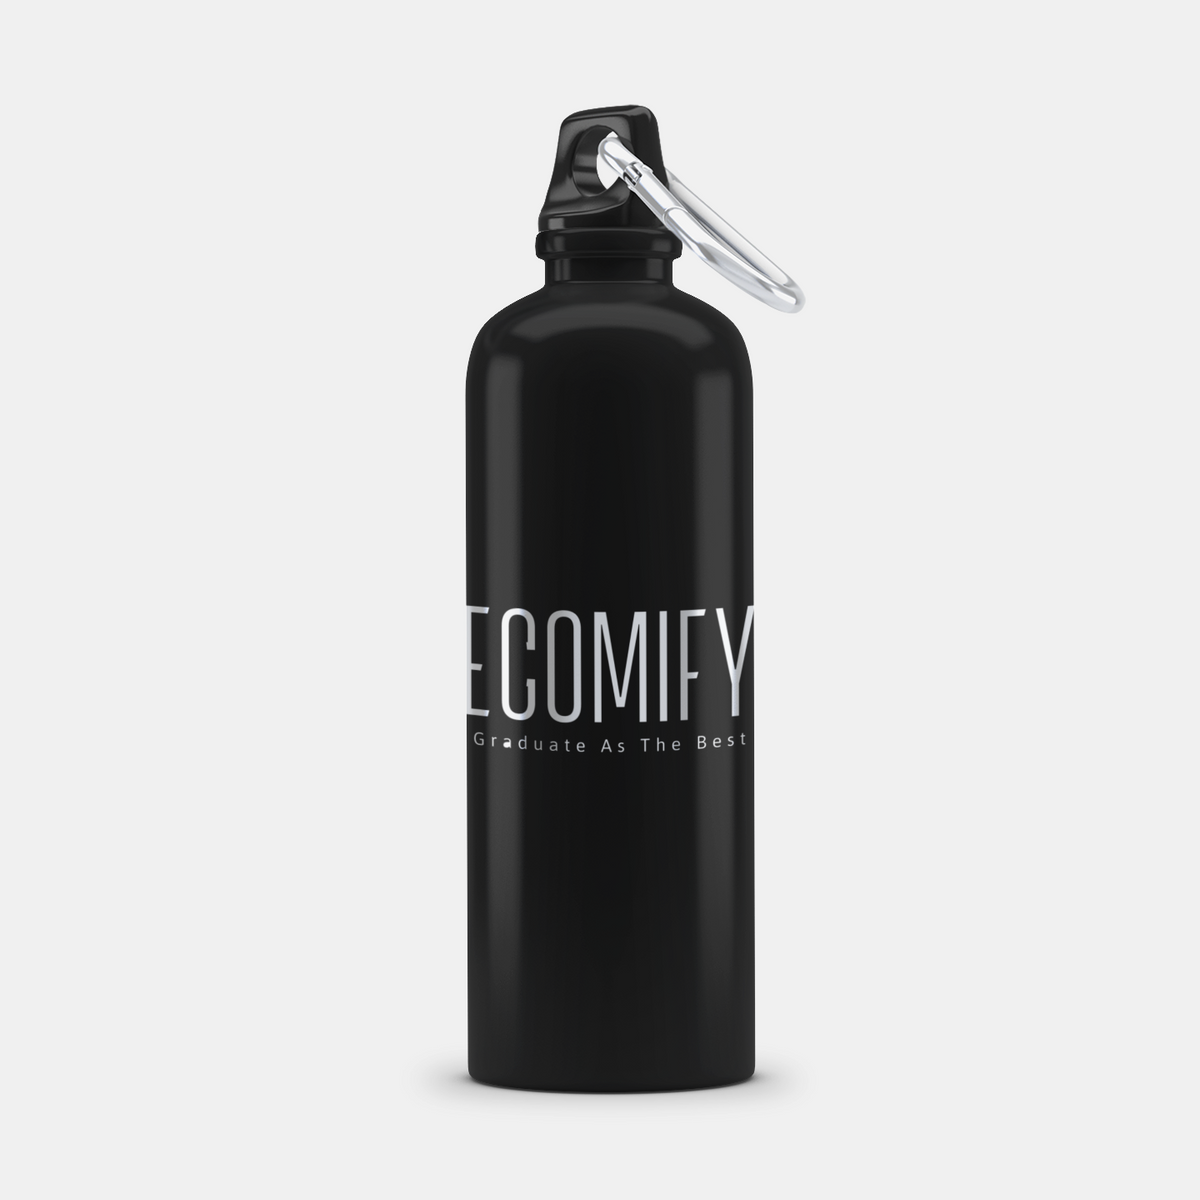 Ecomify® Aluminum Bottle